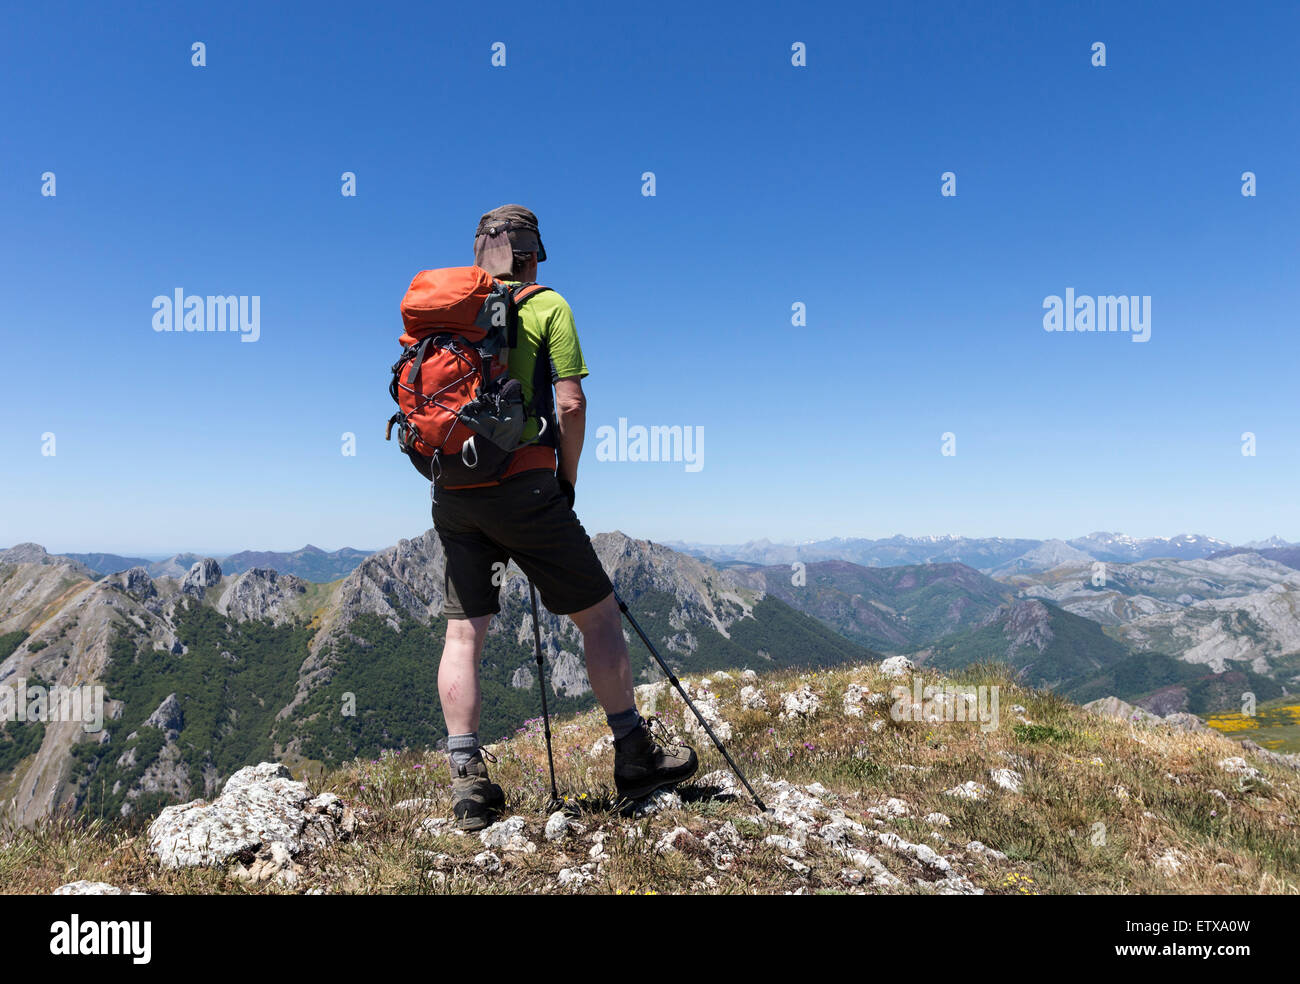 Walker sur le sommet du Pico Hato, avec la vue sur les Picos de Europa, Riano, Cordillère cordillère cantabrique Espagne Banque D'Images